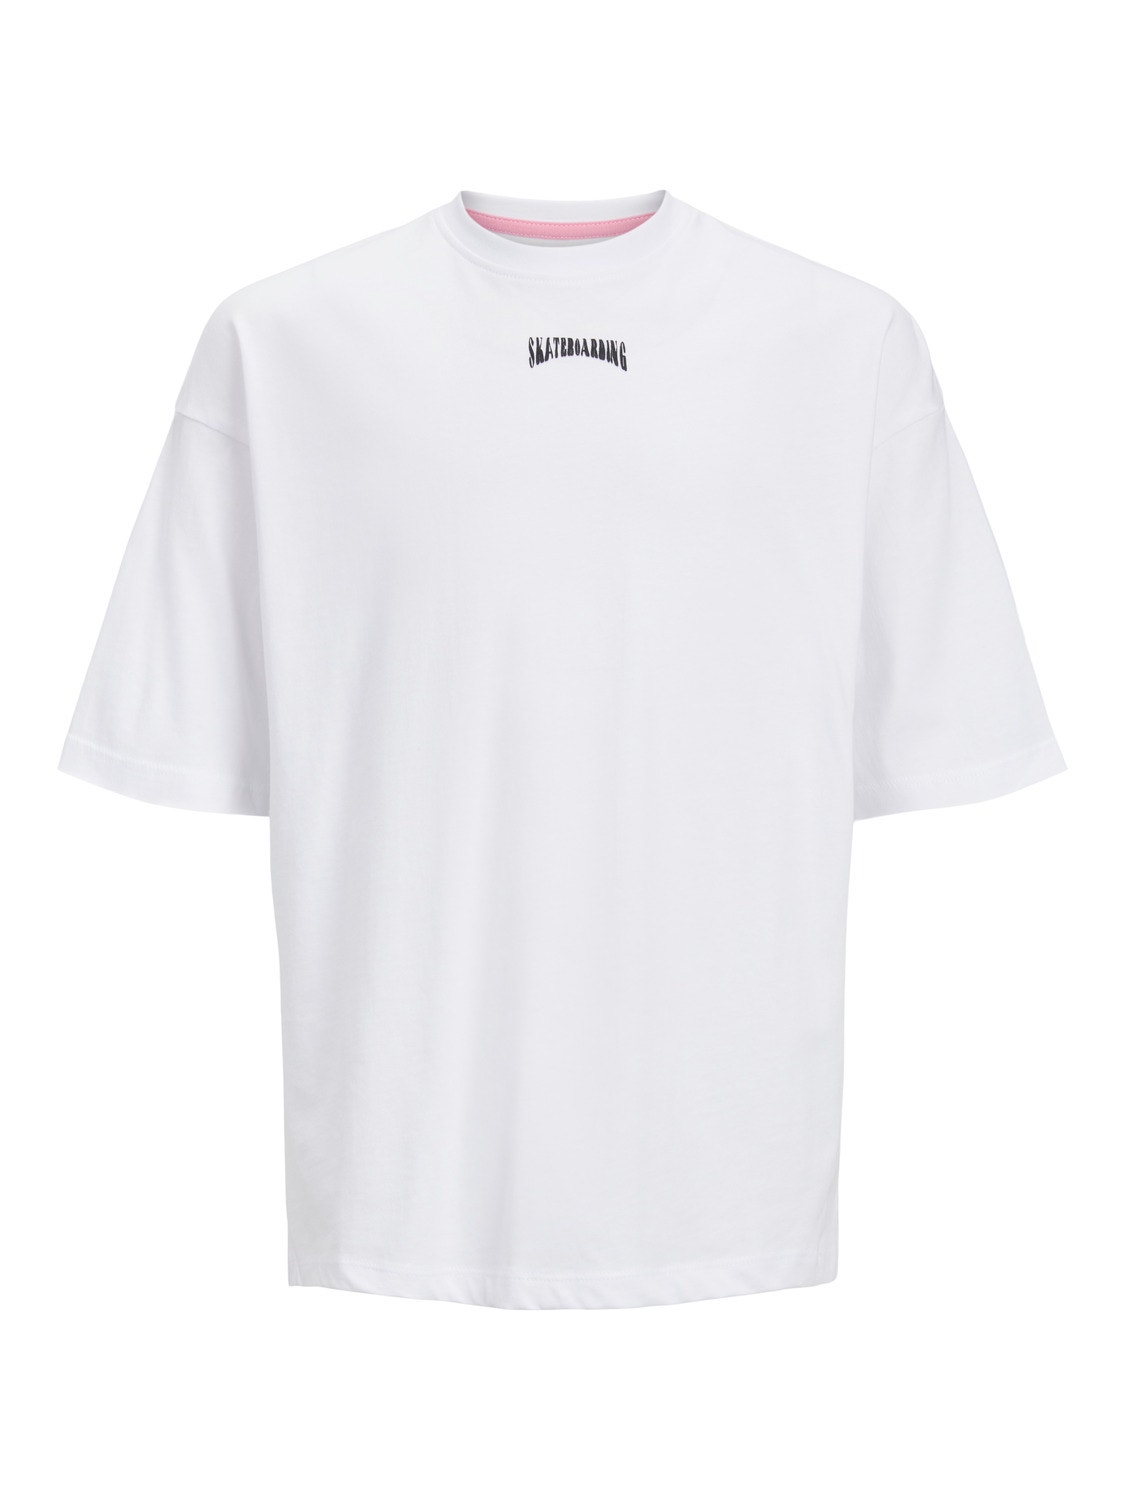 Jack & Jones Printed T-shirt For boys -White - 12235649